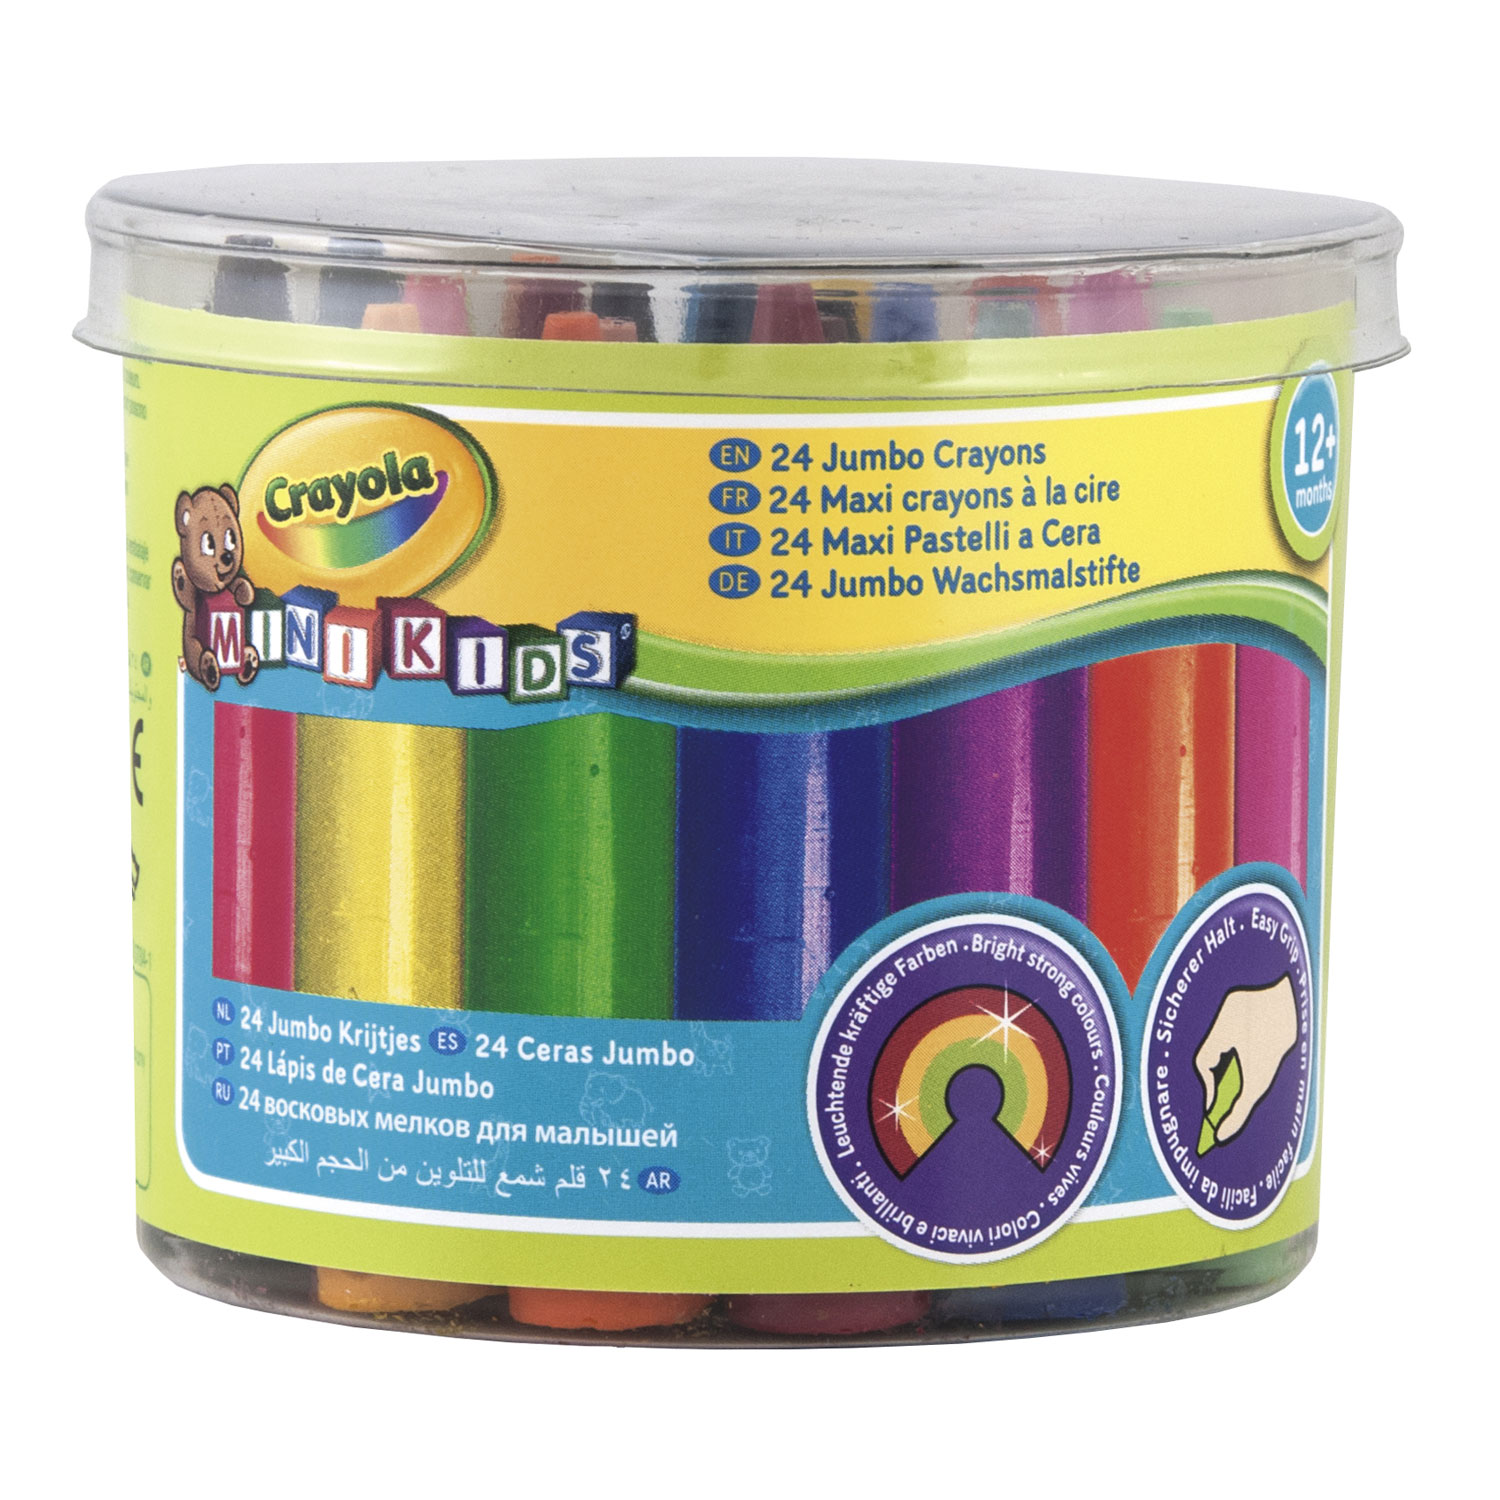 Crayola Mini Kids - Dikke Waskrijtjes